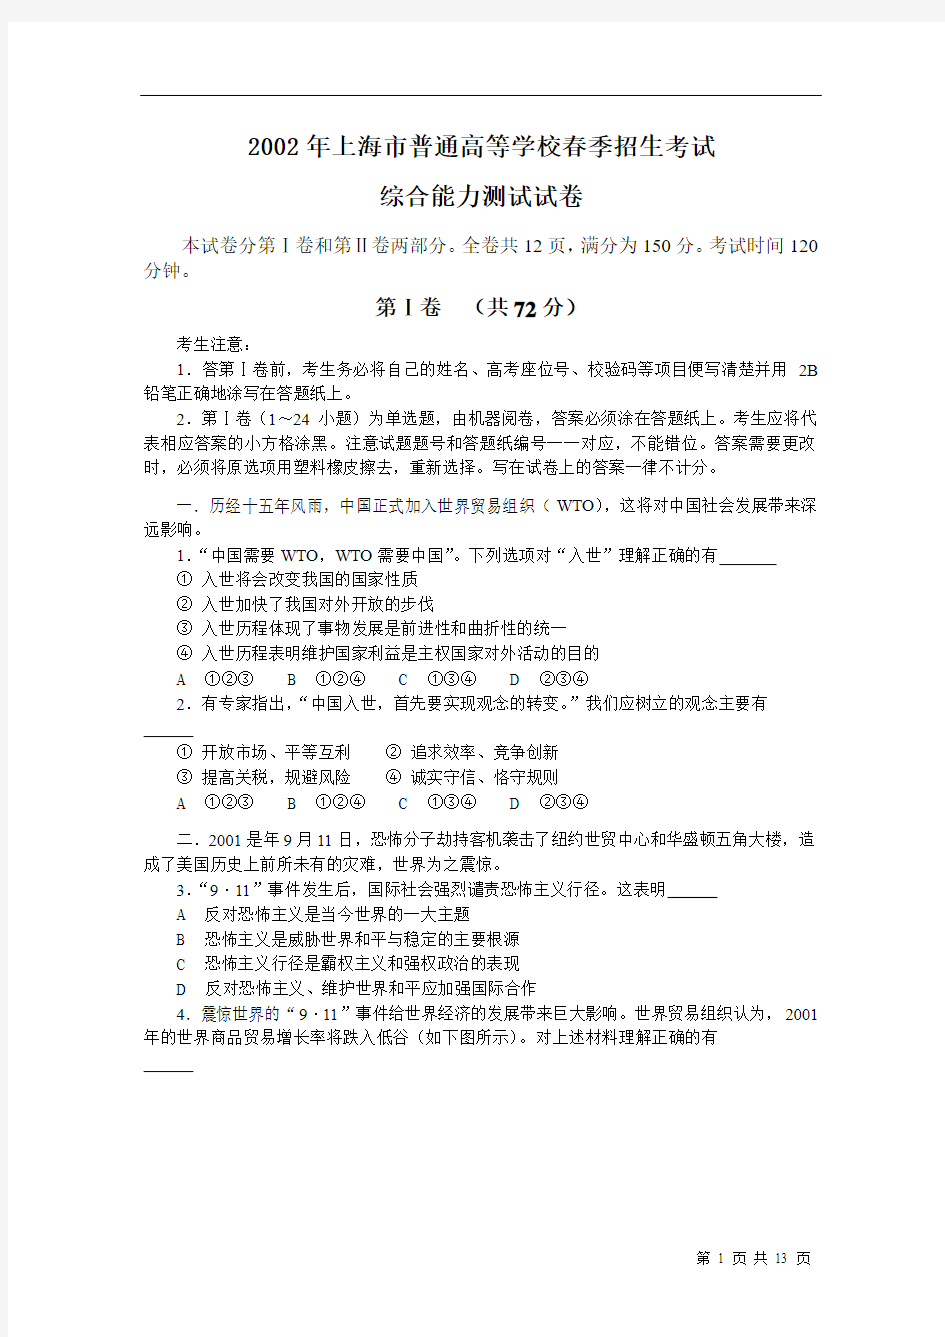 2002年普通高等学校春季招生考试综合能力测试试卷及答案(上海卷)